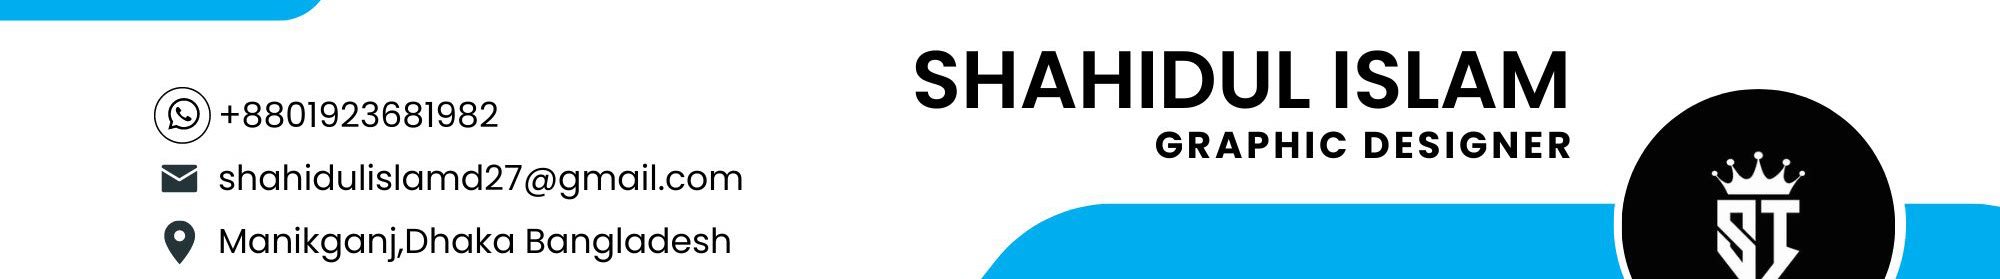 Banner de perfil de Shahidul Islam